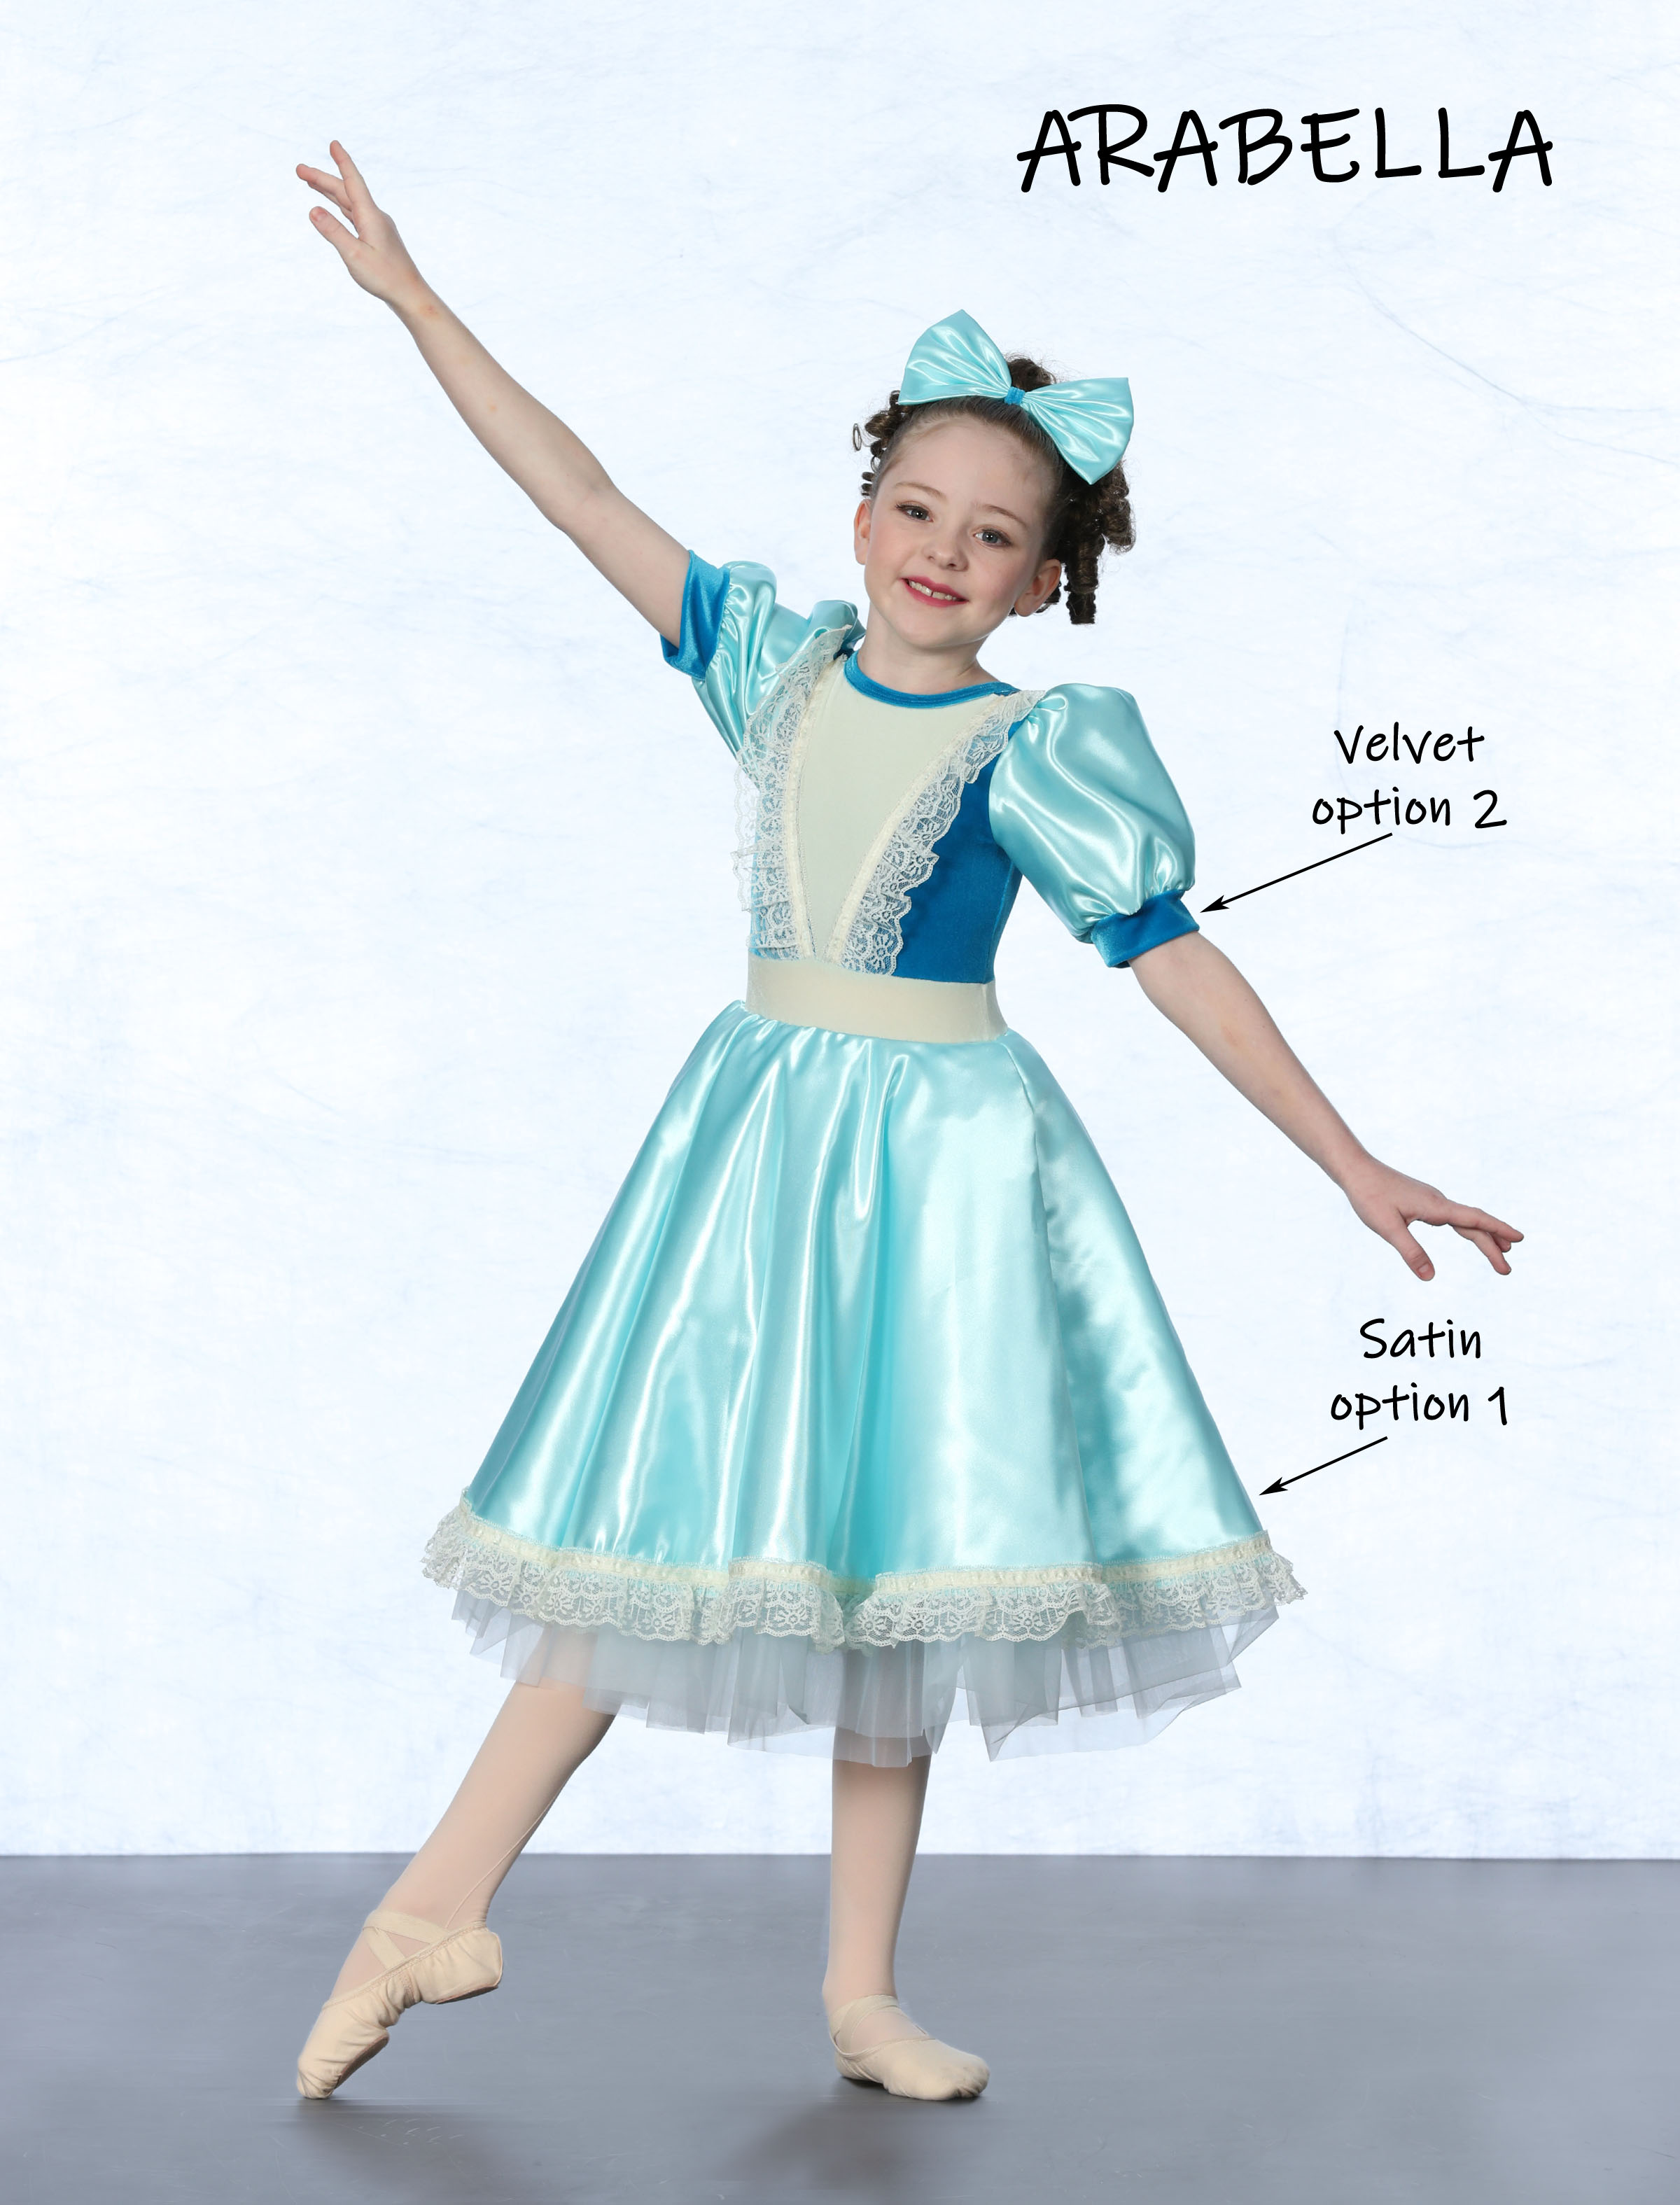 nutcracker ballet costumes for kids